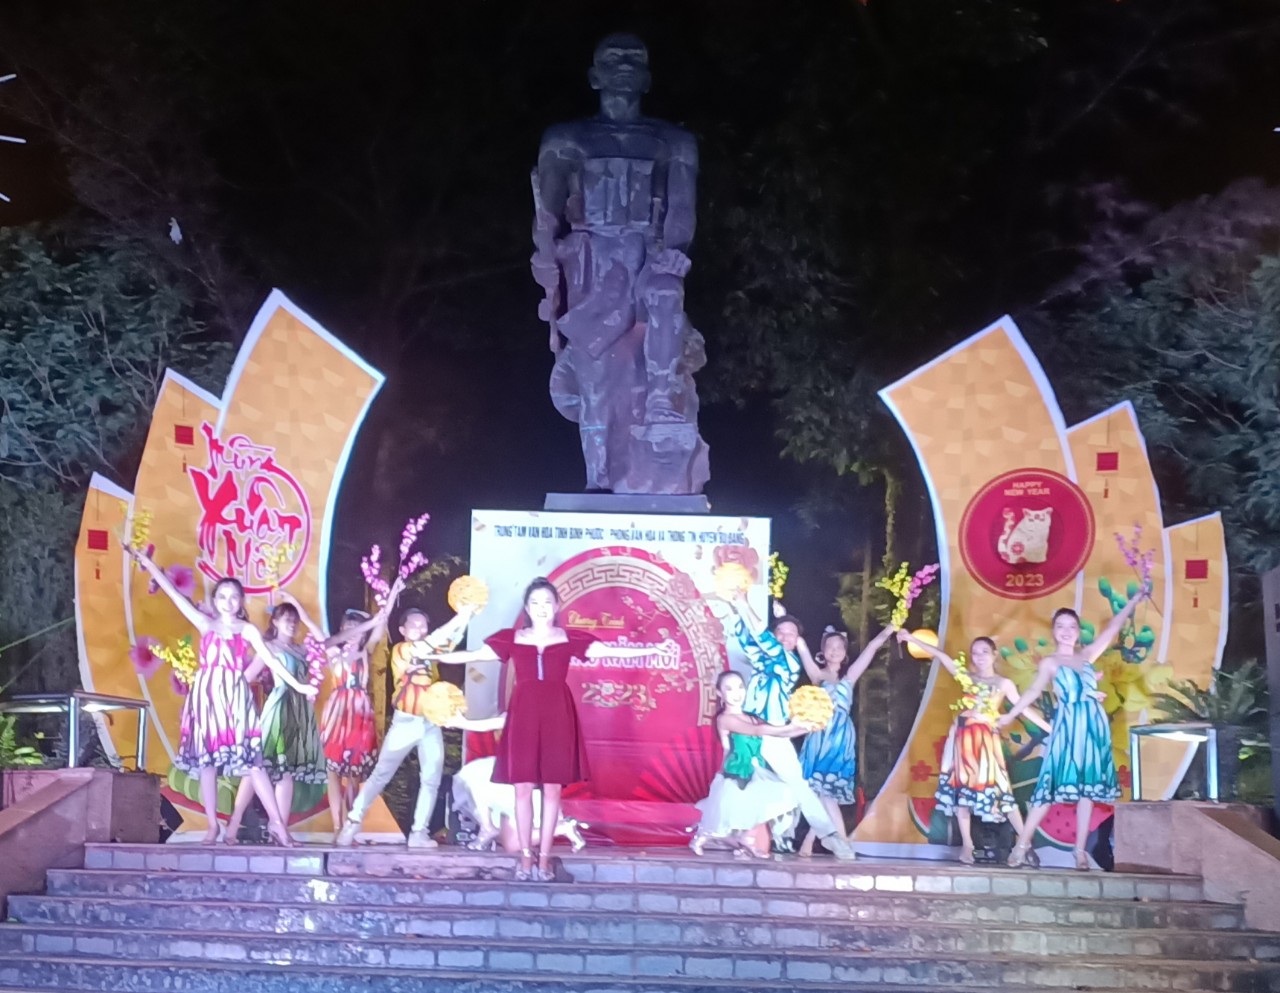 Trung tâm Văn hóa tỉnh Bình Phước phối hợp Phòng Văn hóa và Thông tin huyện Bù Đăng tổ chức chương trình biểu diễn nghệ thuật với chủ đề  “Chào năm mới 2023”.